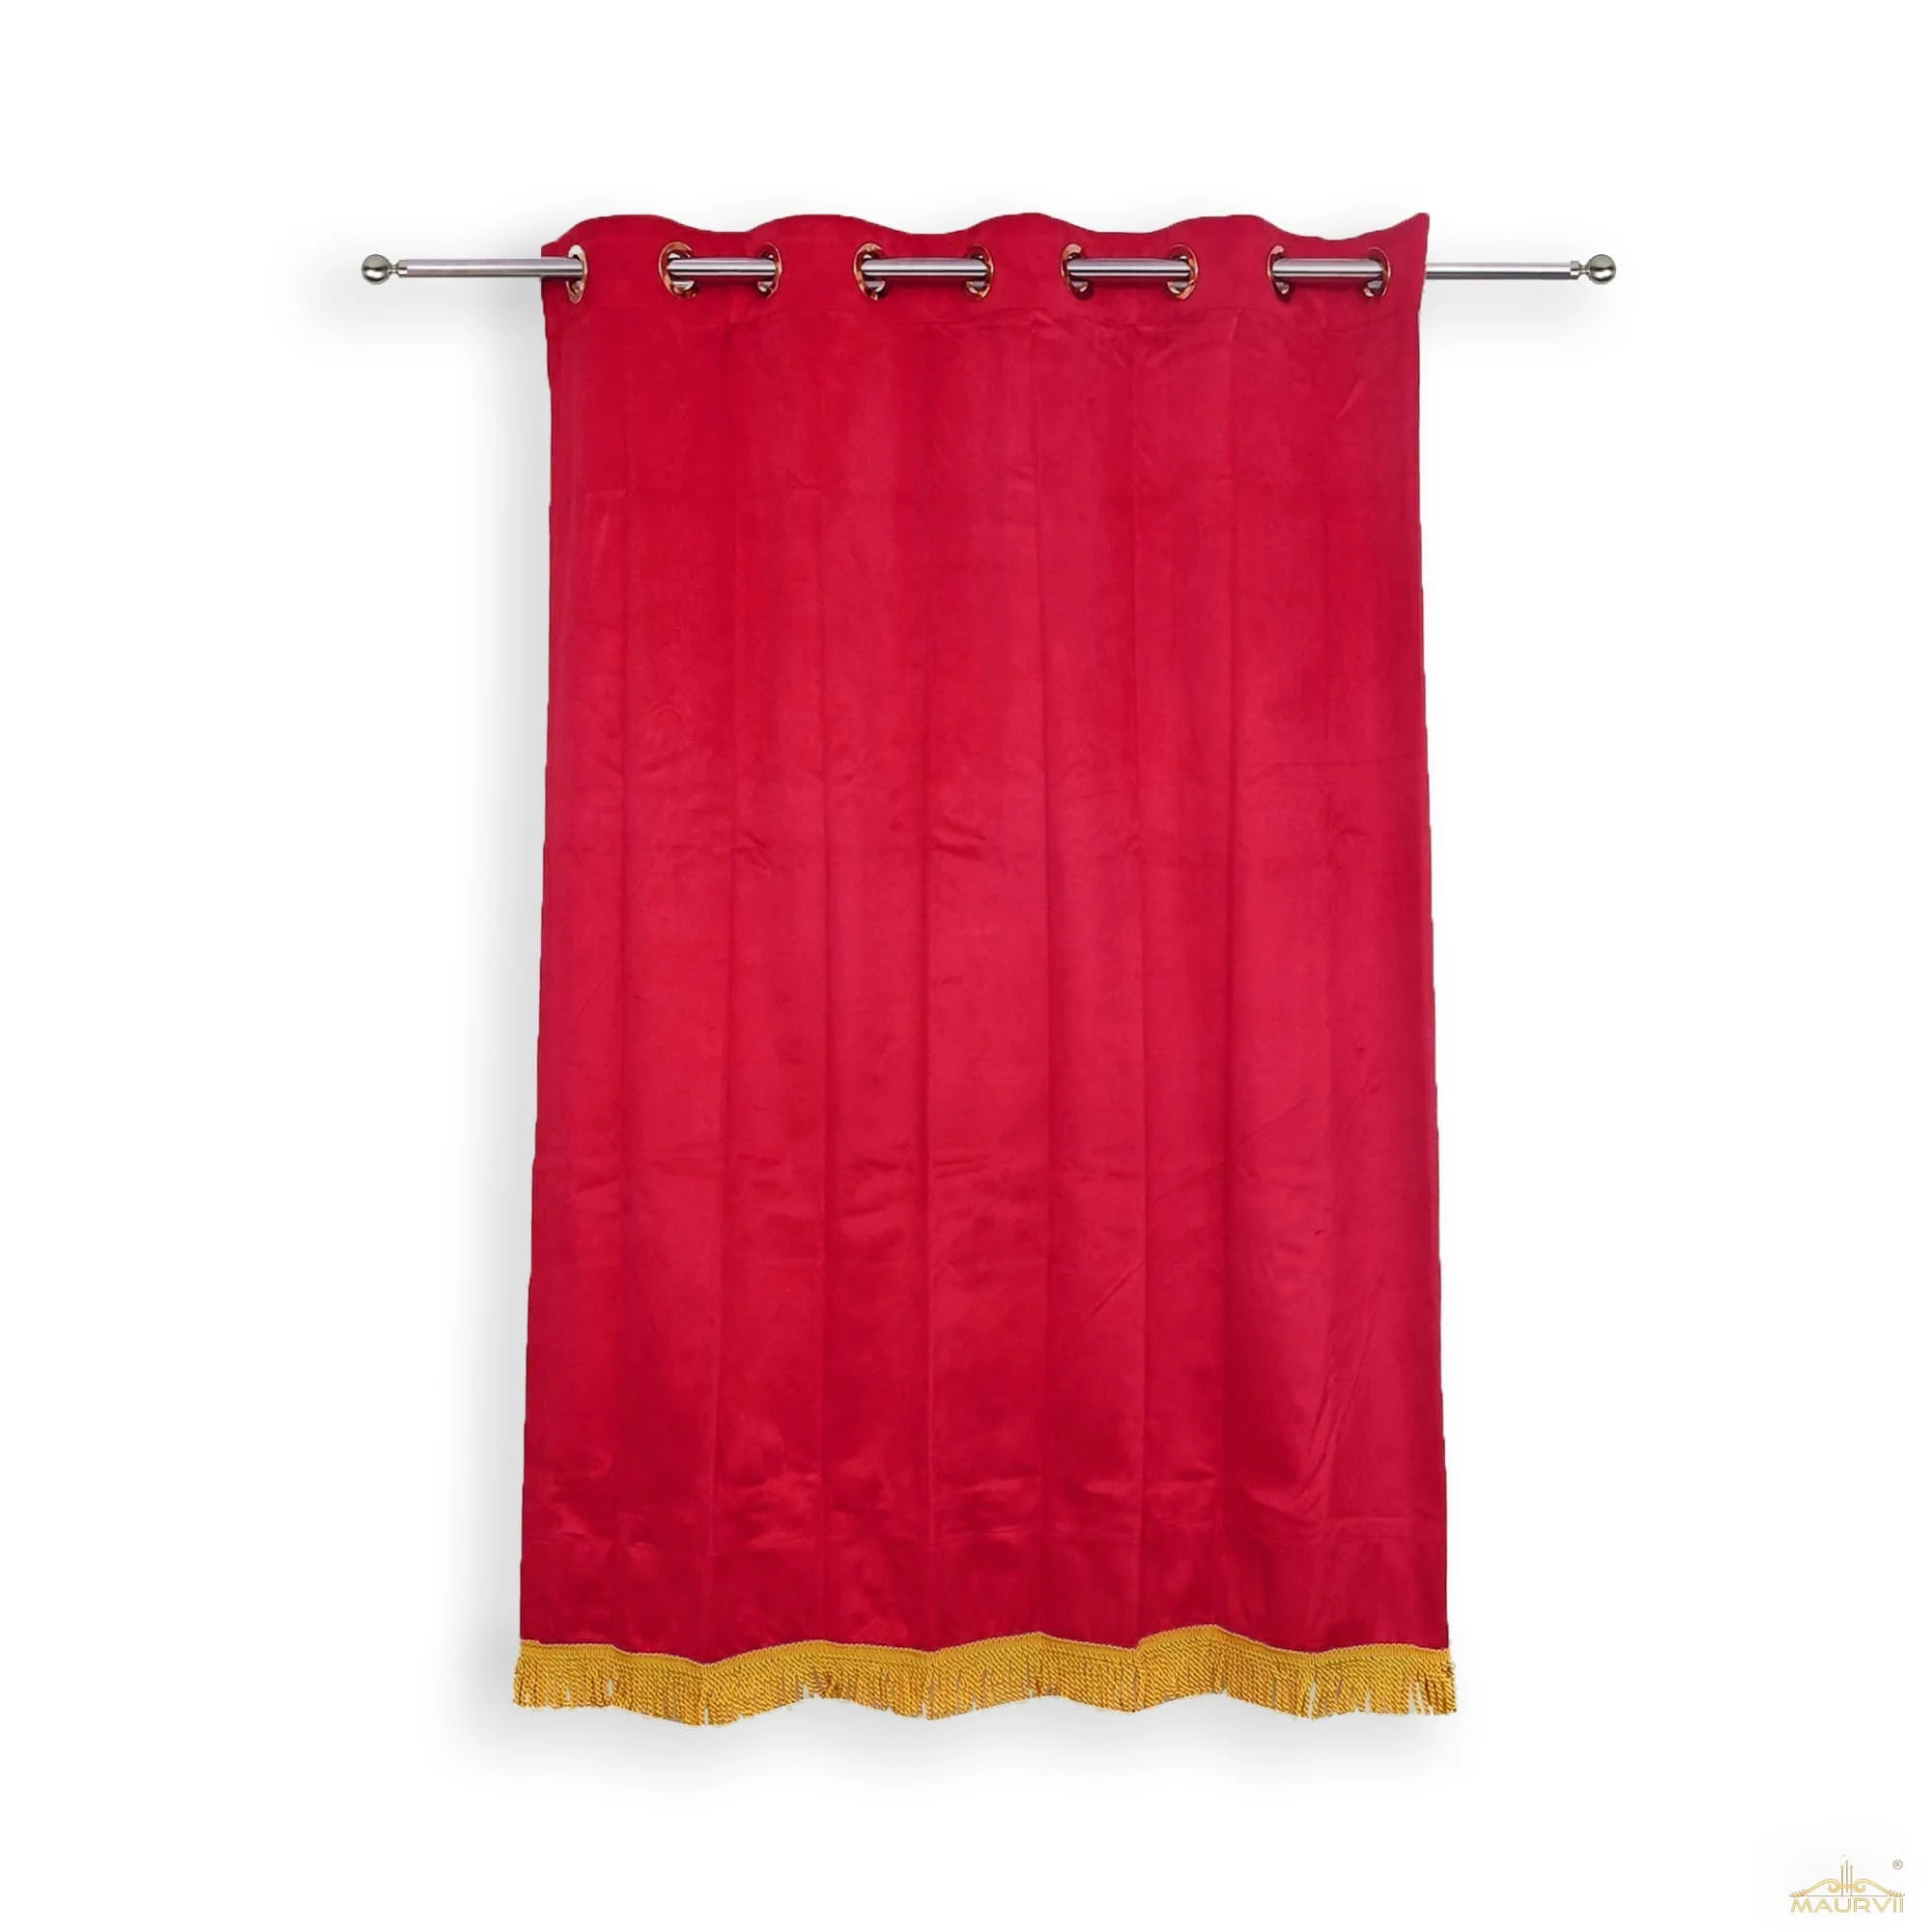 Red velvet drapes with fringe curtains